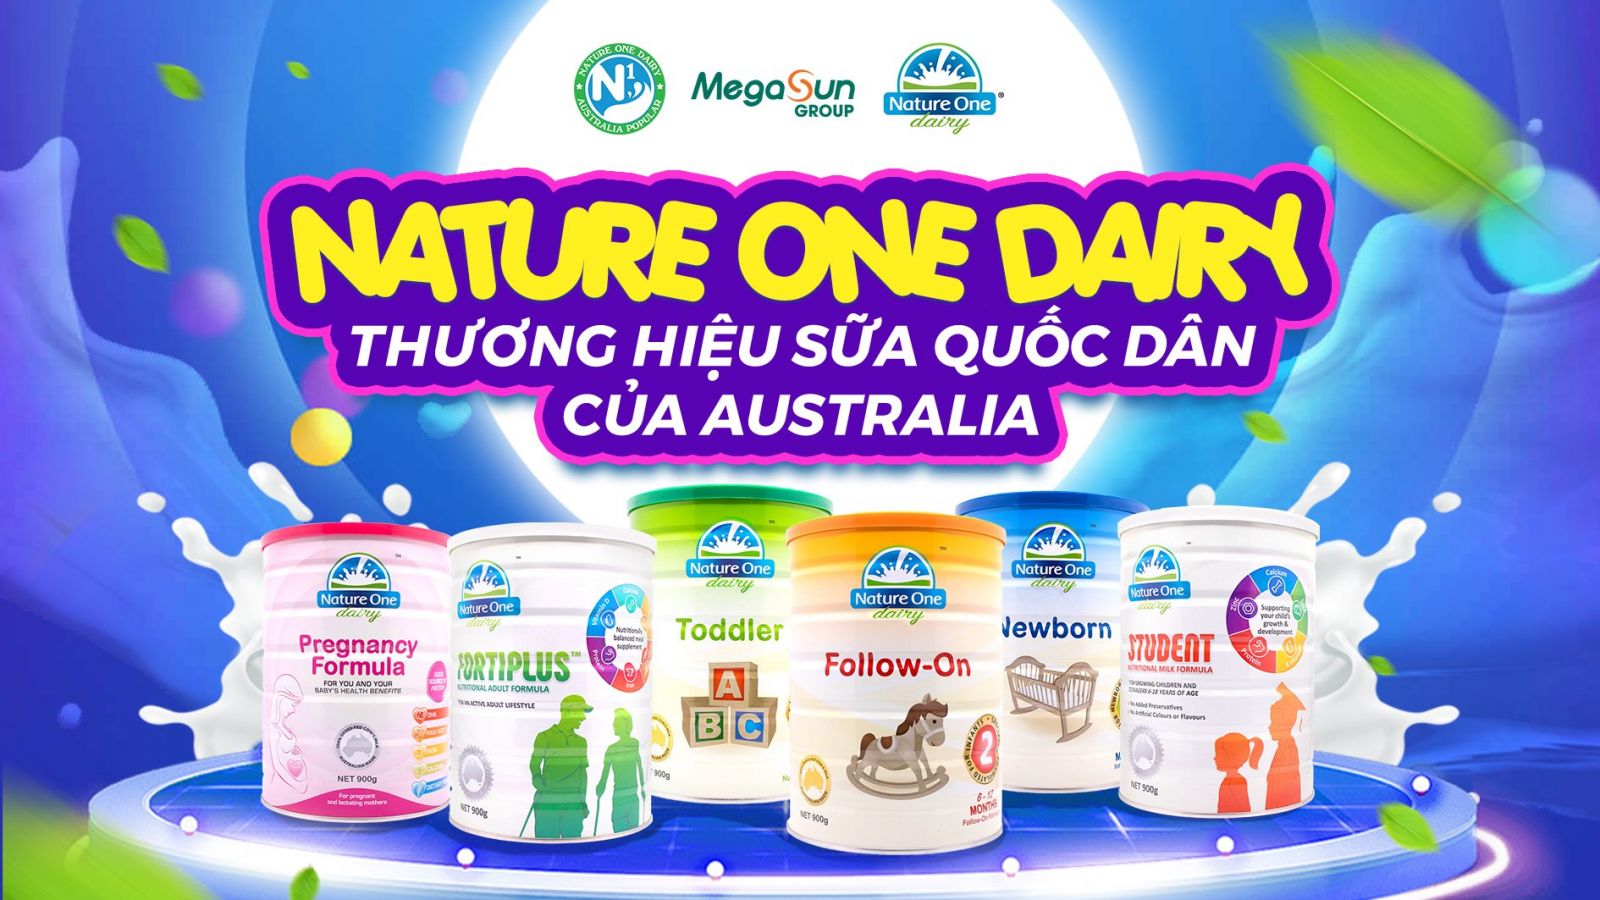 Nature One Dairy - Thương hiệu sữa quốc dân tại Úc